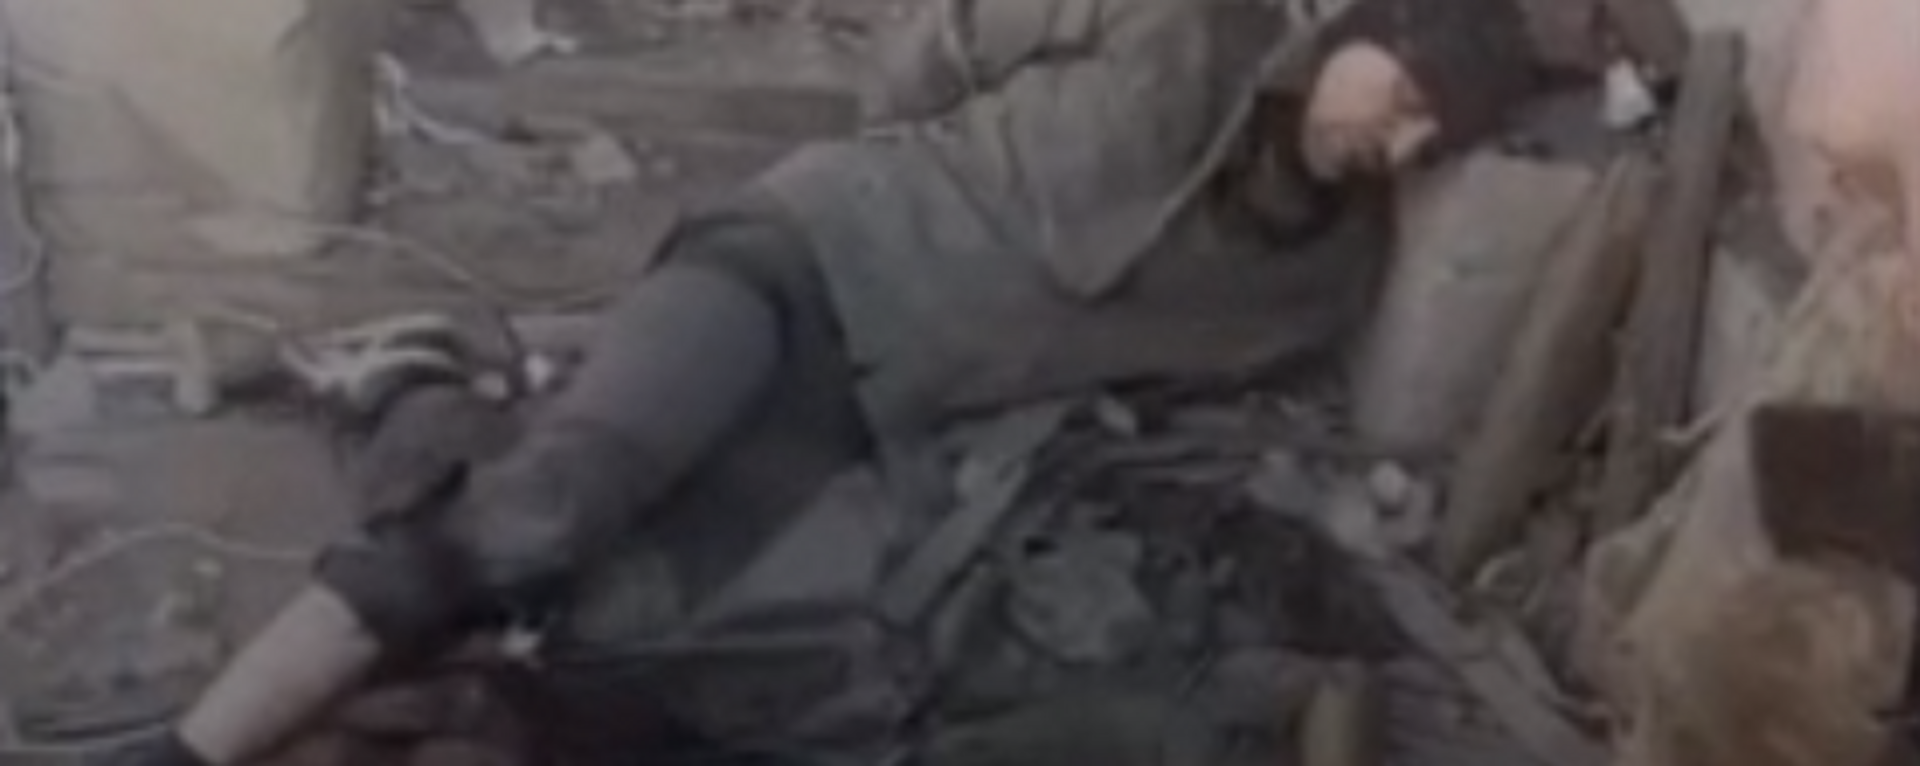 Video: los combatientes al servicio de Kiev se burlan de un prisionero de guerra ruso herido - Sputnik Mundo, 1920, 05.07.2022